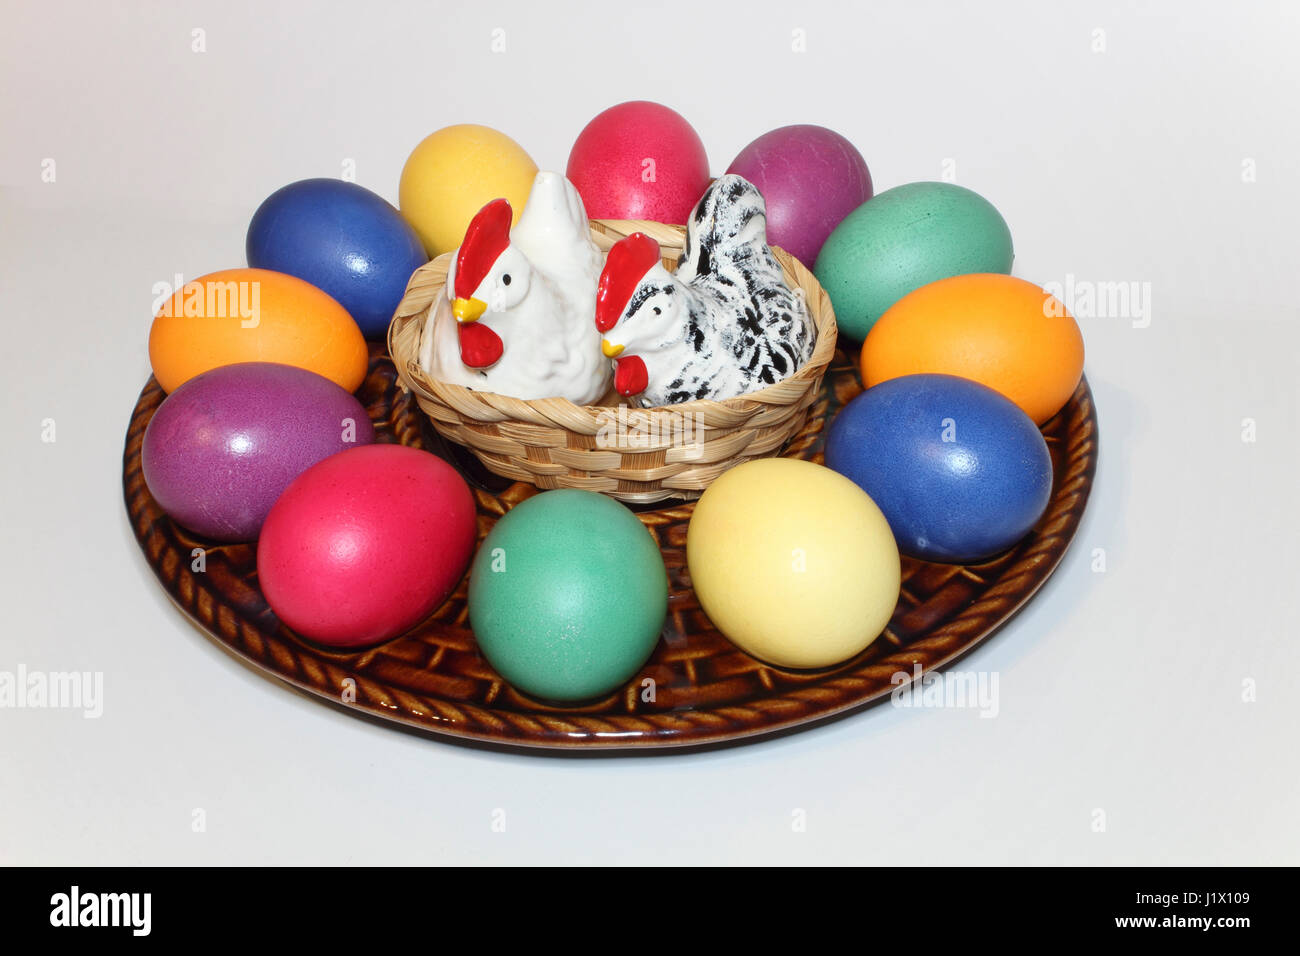 bunte Ostereier in einem Keramik-Teller mit Porzellanhühnern als Salz-und Pfefferstreuer; colored Easter eggs on a ceramic egg plate Stock Photo